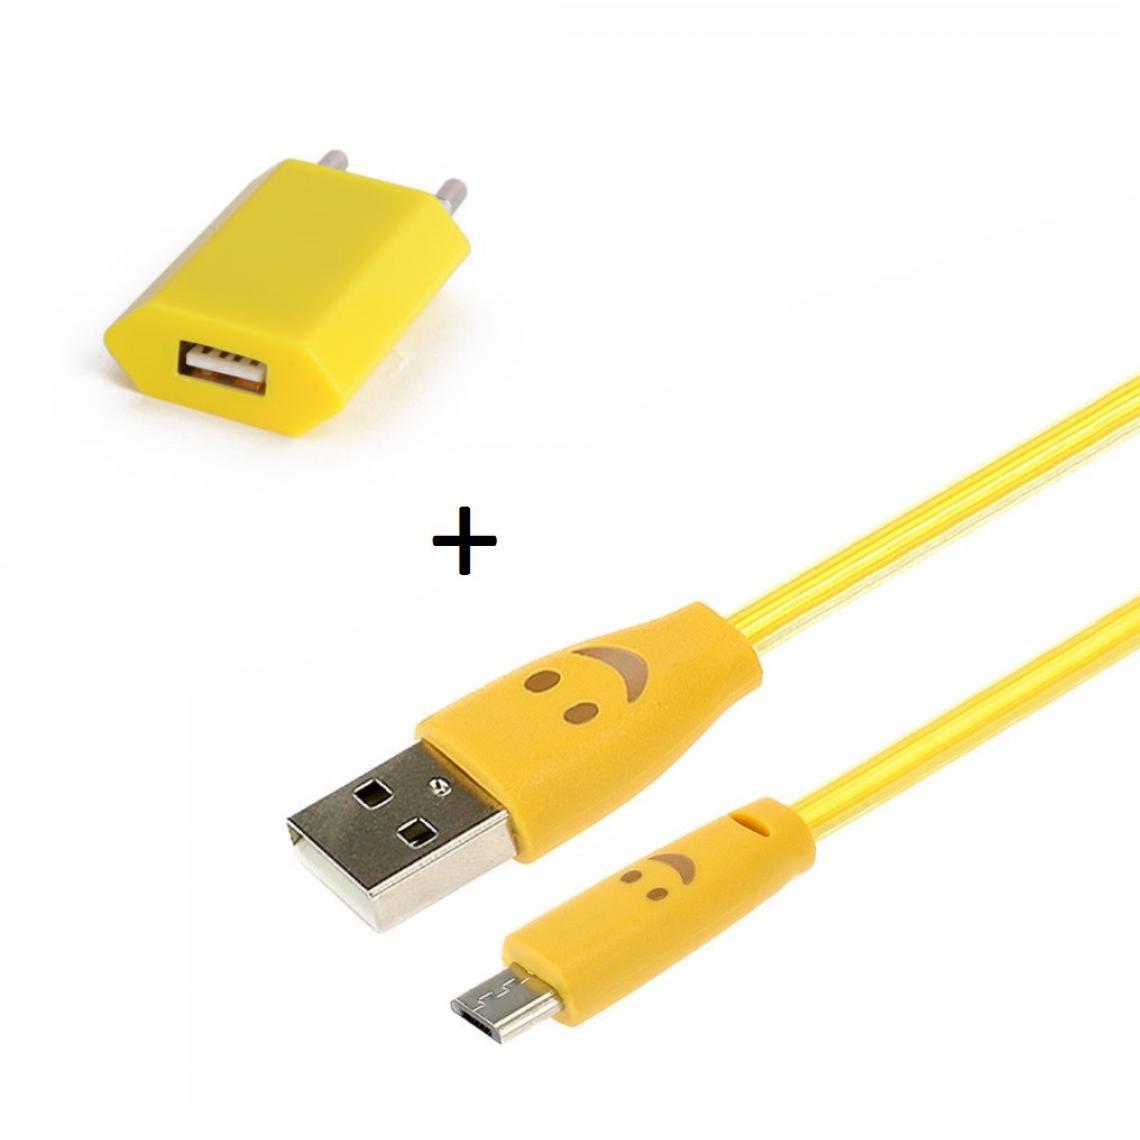 Shot - Pack Chargeur pour JBL CLIP 3 Smartphone Micro USB (Cable Smiley LED + Prise Secteur USB) Android (JAUNE) - Chargeur secteur téléphone